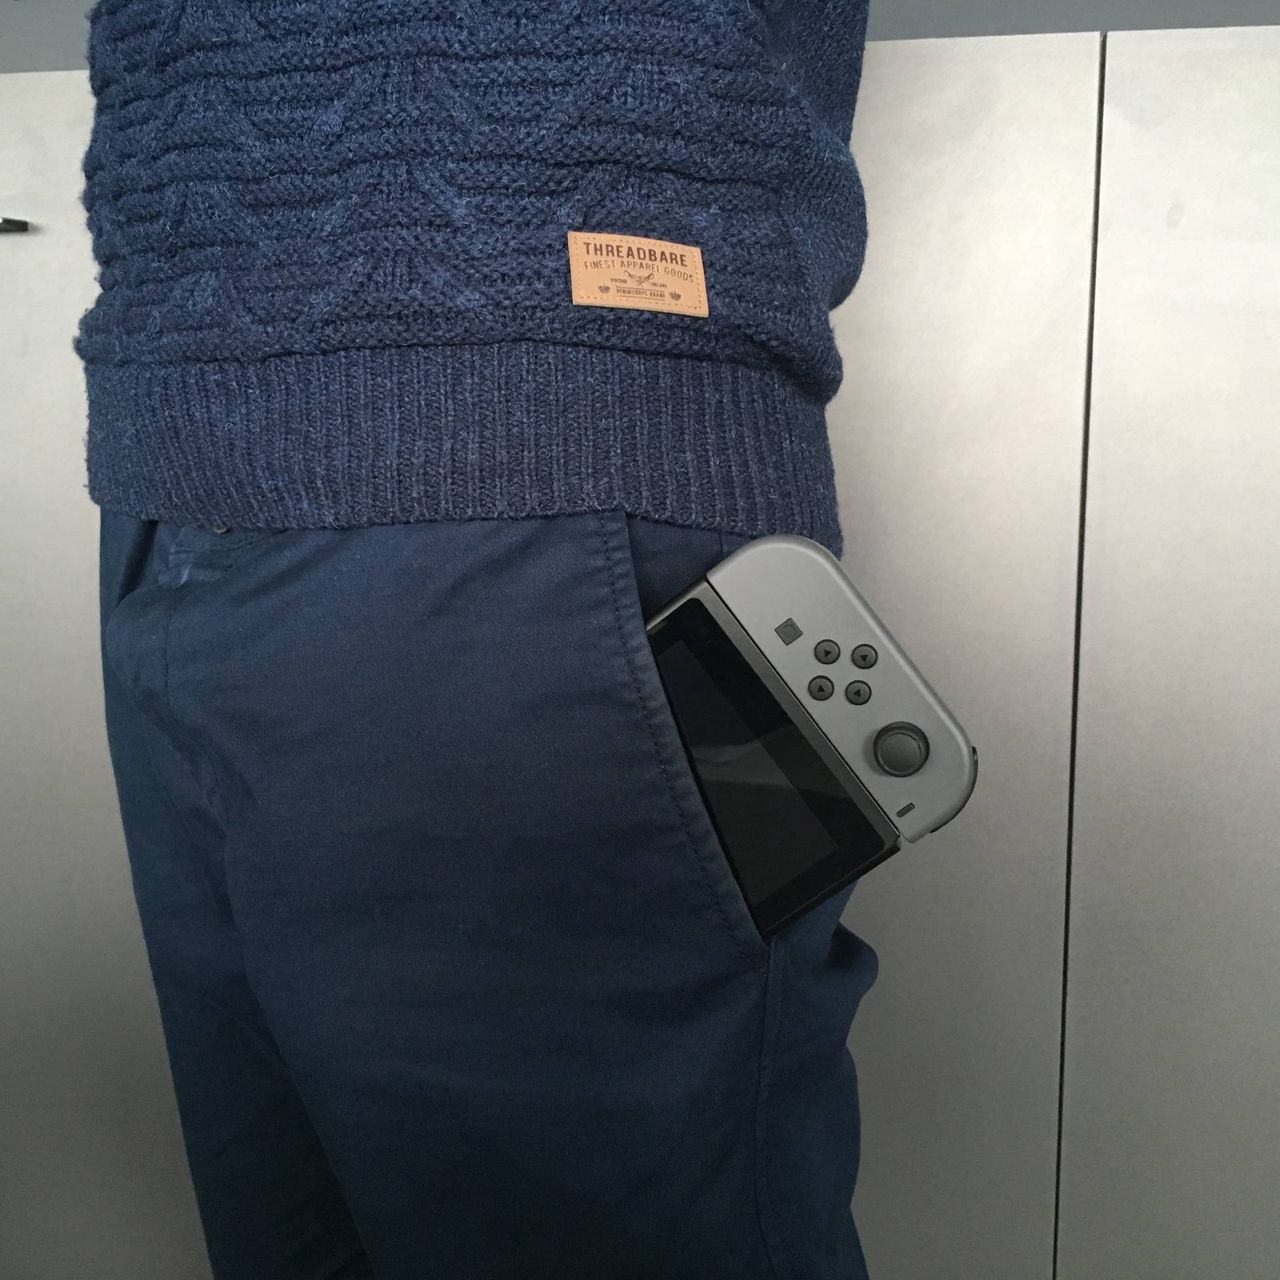 Nintendo Switch - "kieszonsolka"